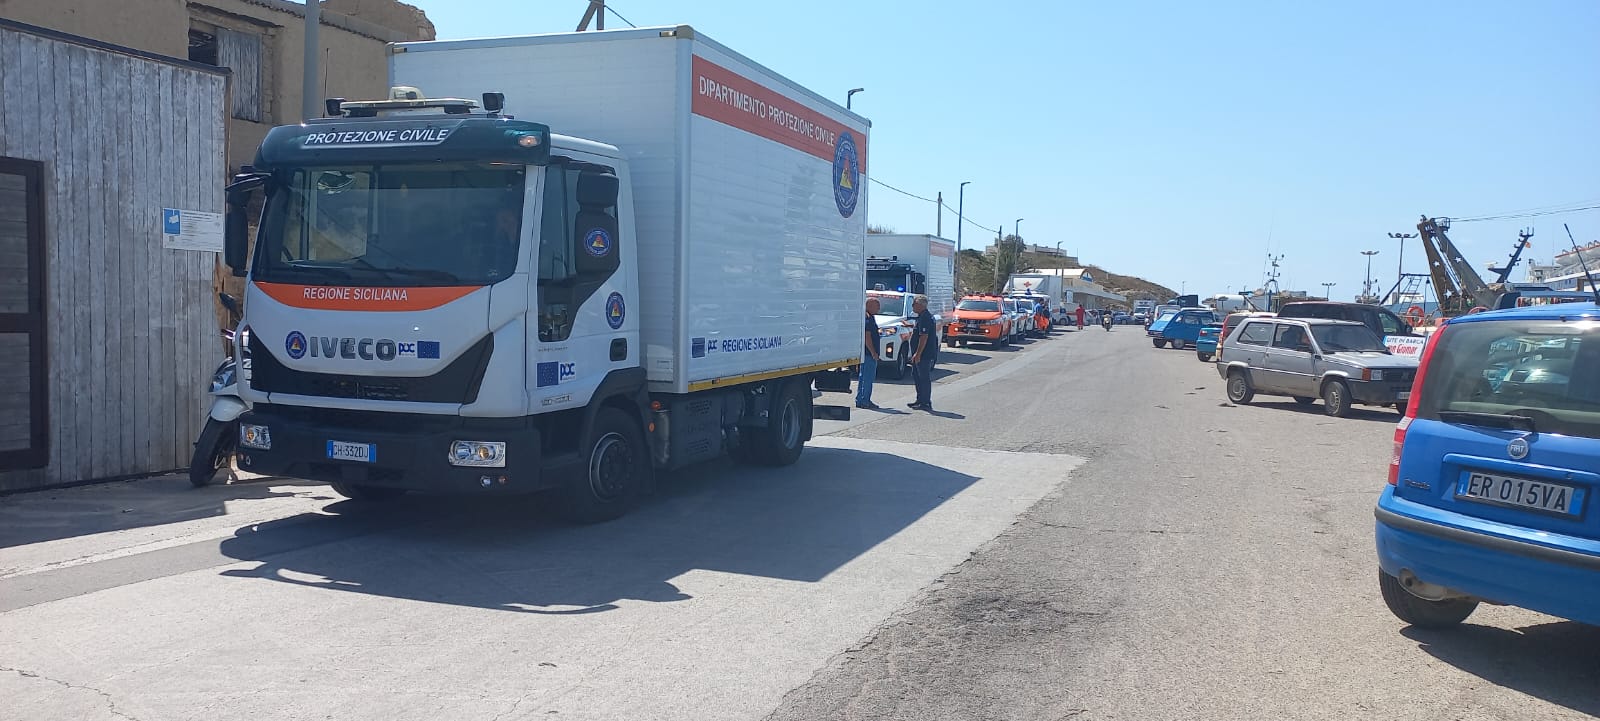 [In aggiornamento] Lampedusa, emergenza migranti:  iniziate alle ore 13 di oggi le operazioni di sbarco del traghetto con a bordo uomini, mezzi e attrezzature del Dipartimento Regionale della Protezione Civile